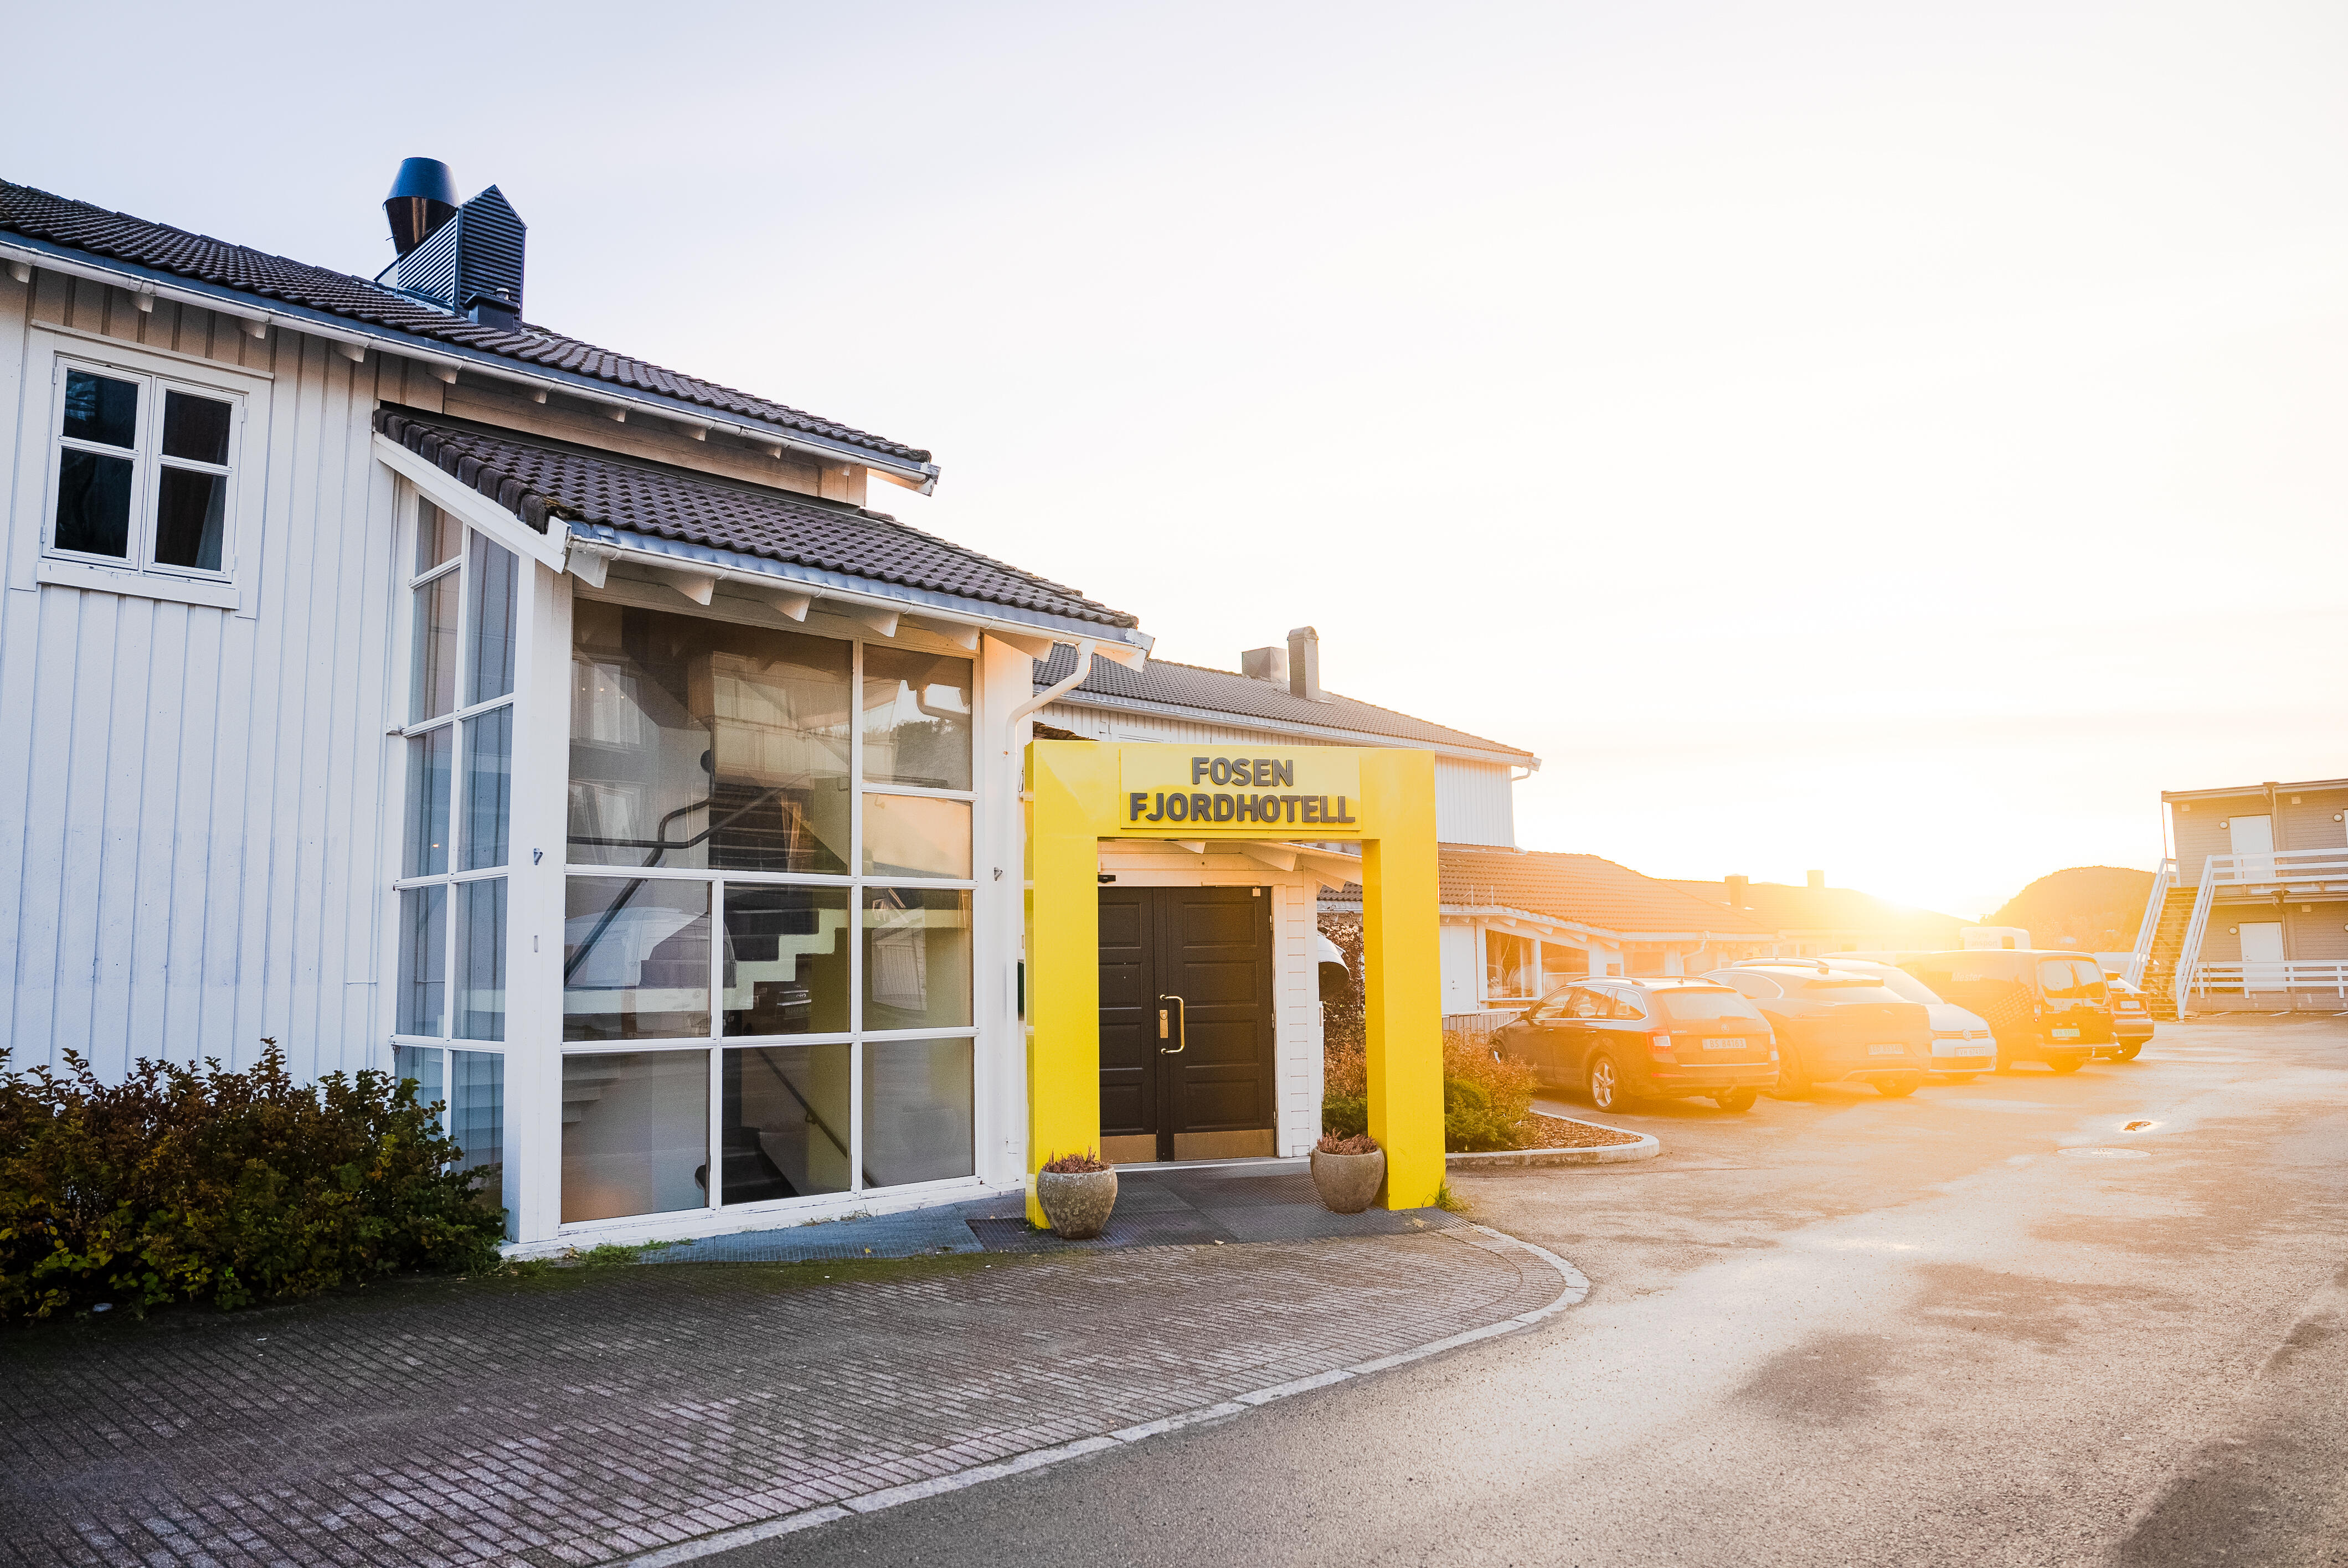 Fasaden til Fosen Fjordhotell i solnedgang.